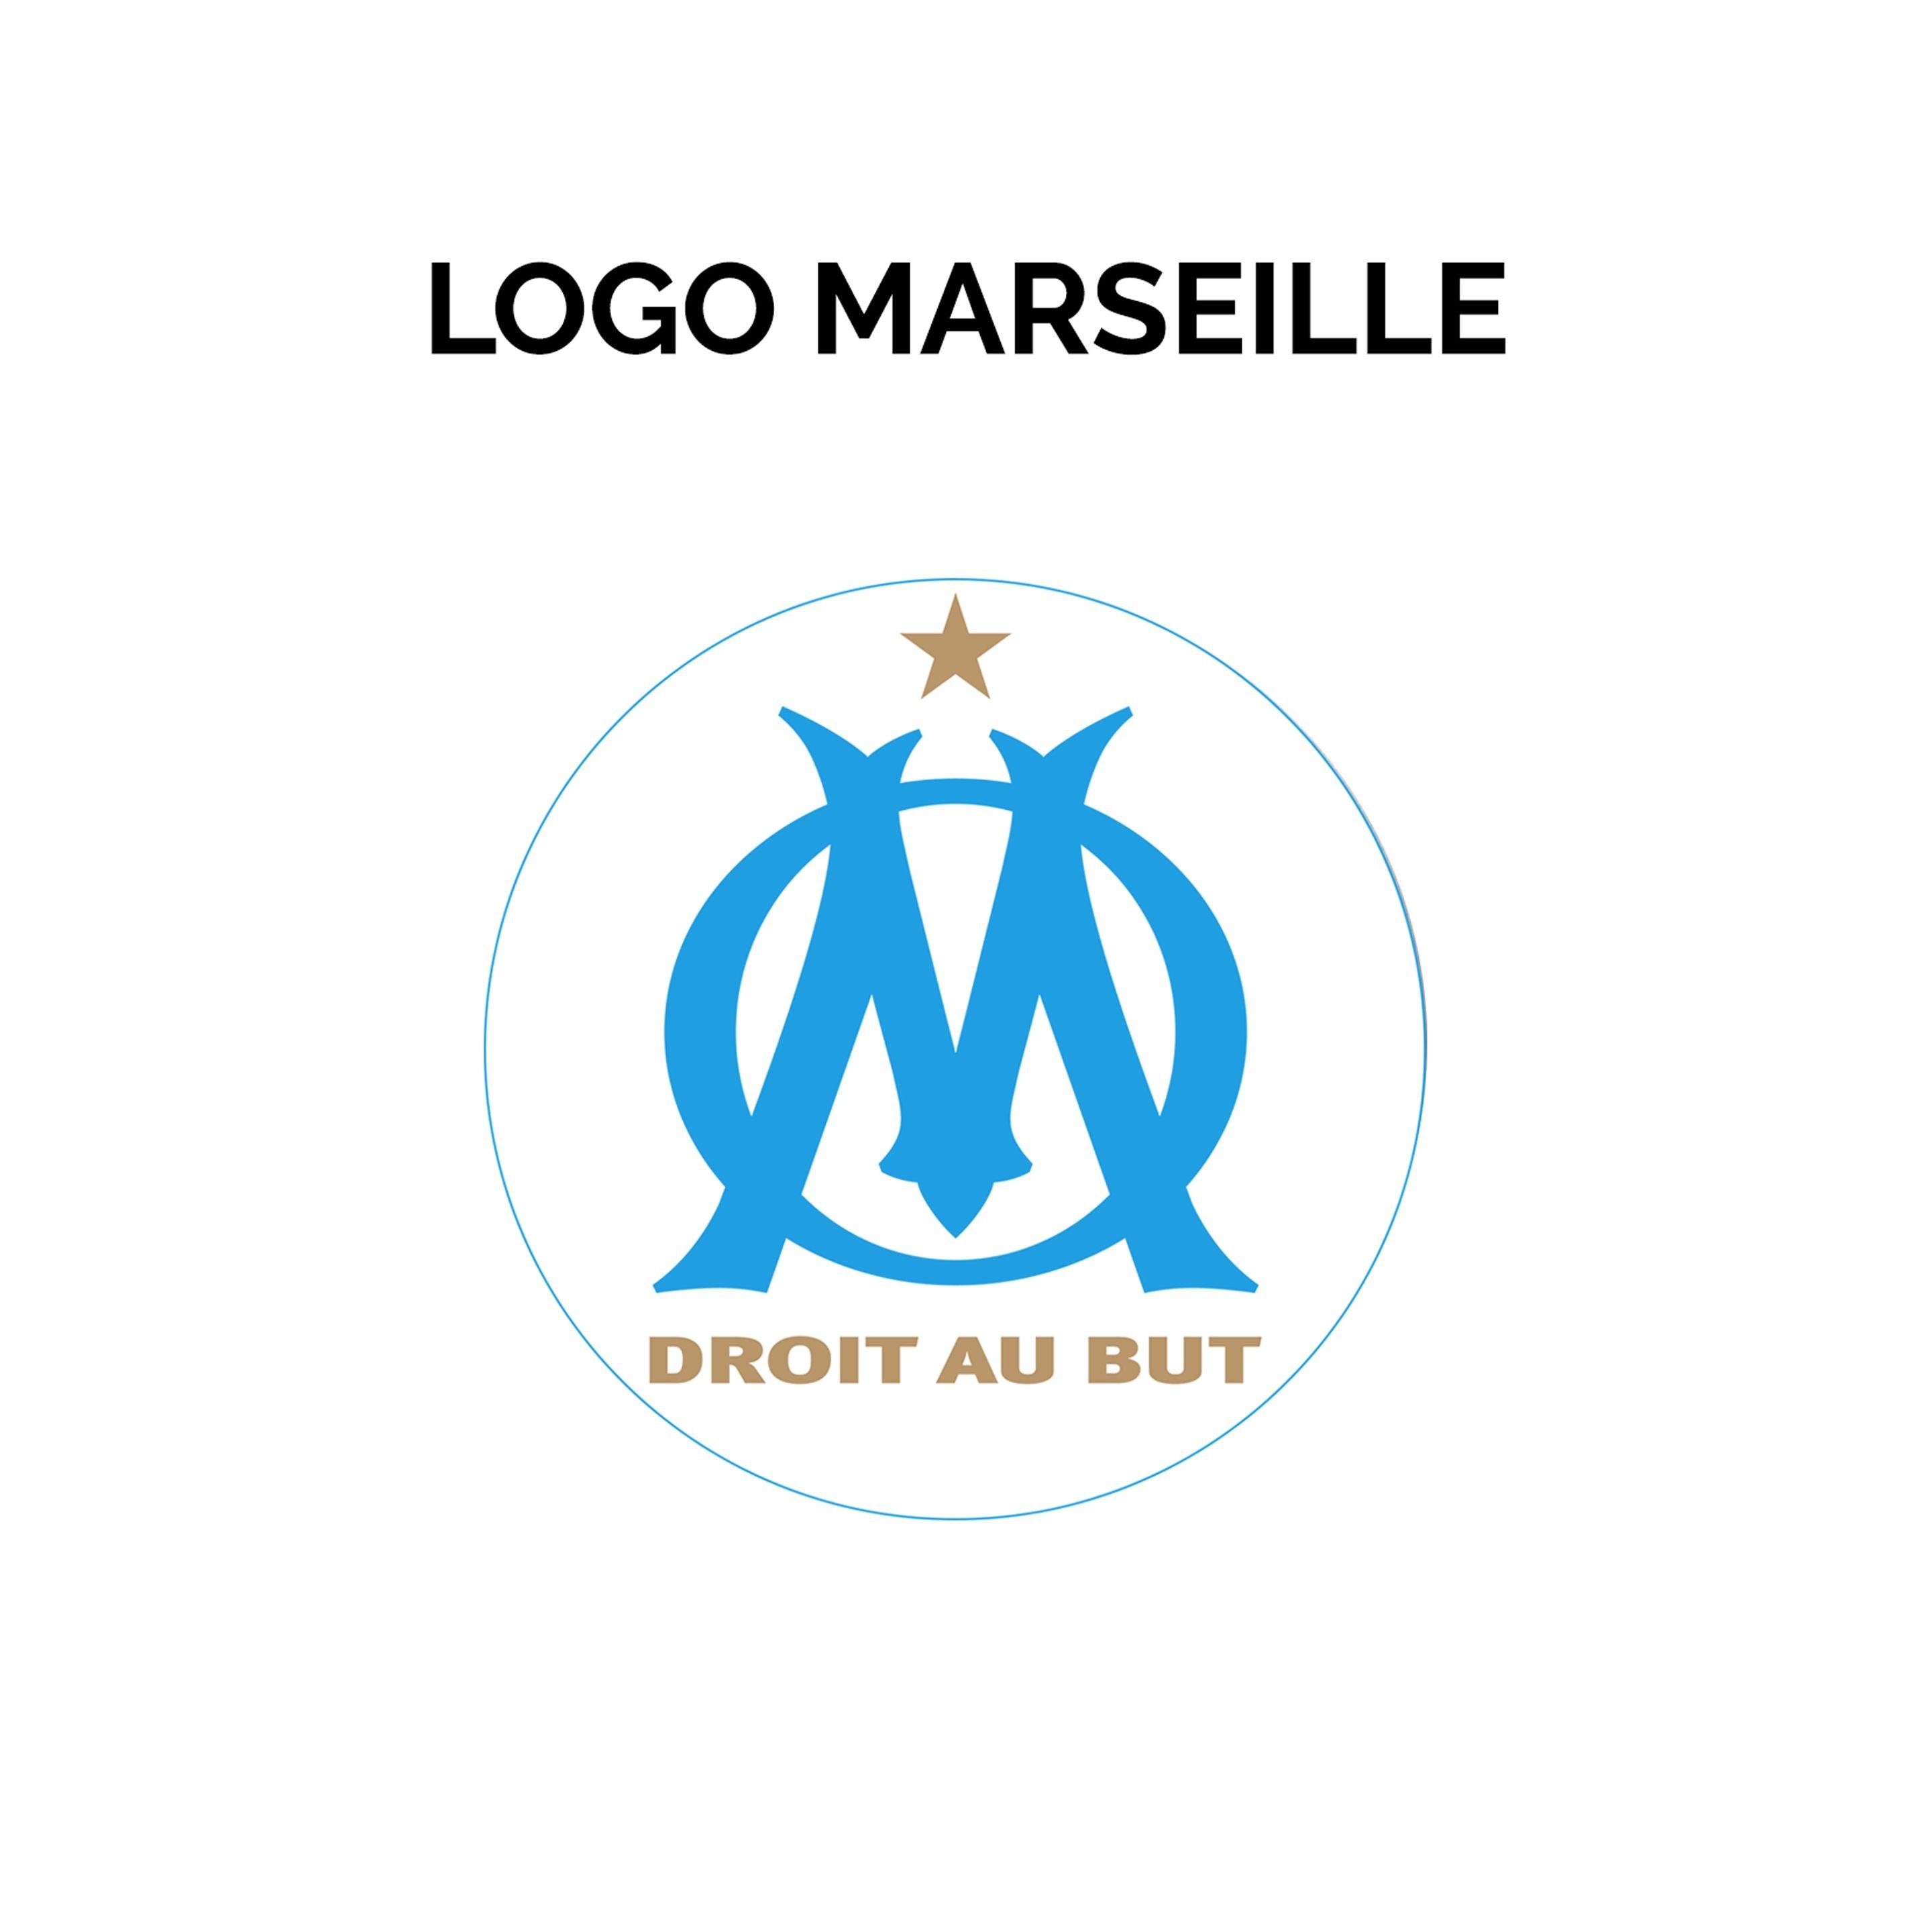 Marseille Logo - Logo PS4 Controller Olympique de Marseille